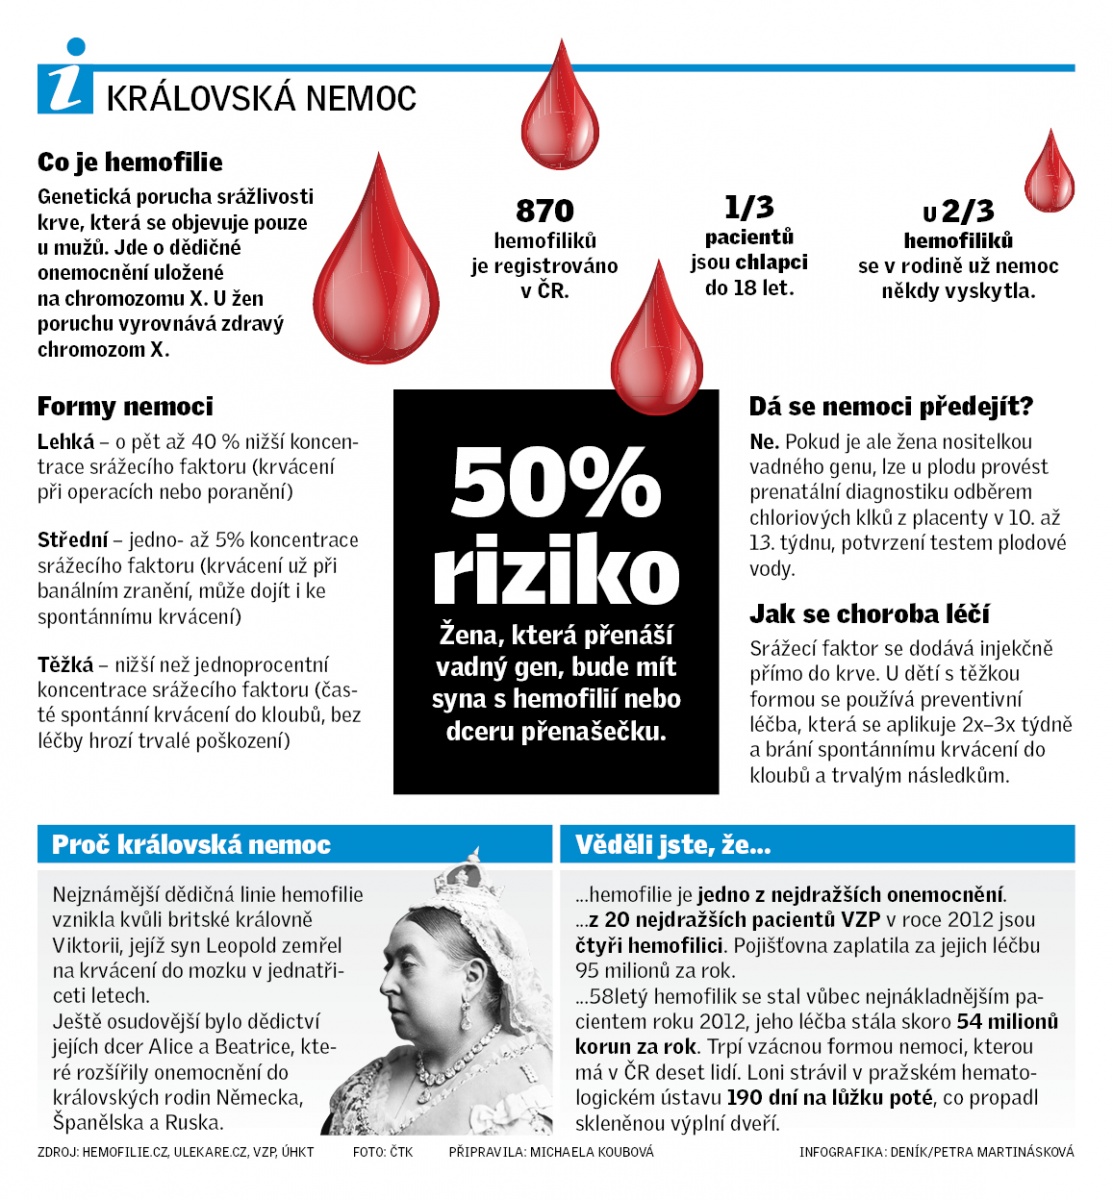 Hemofilici žijí normálním životem, ale mají obavy z nehod. Mohou vykrvácet  - Deník.cz